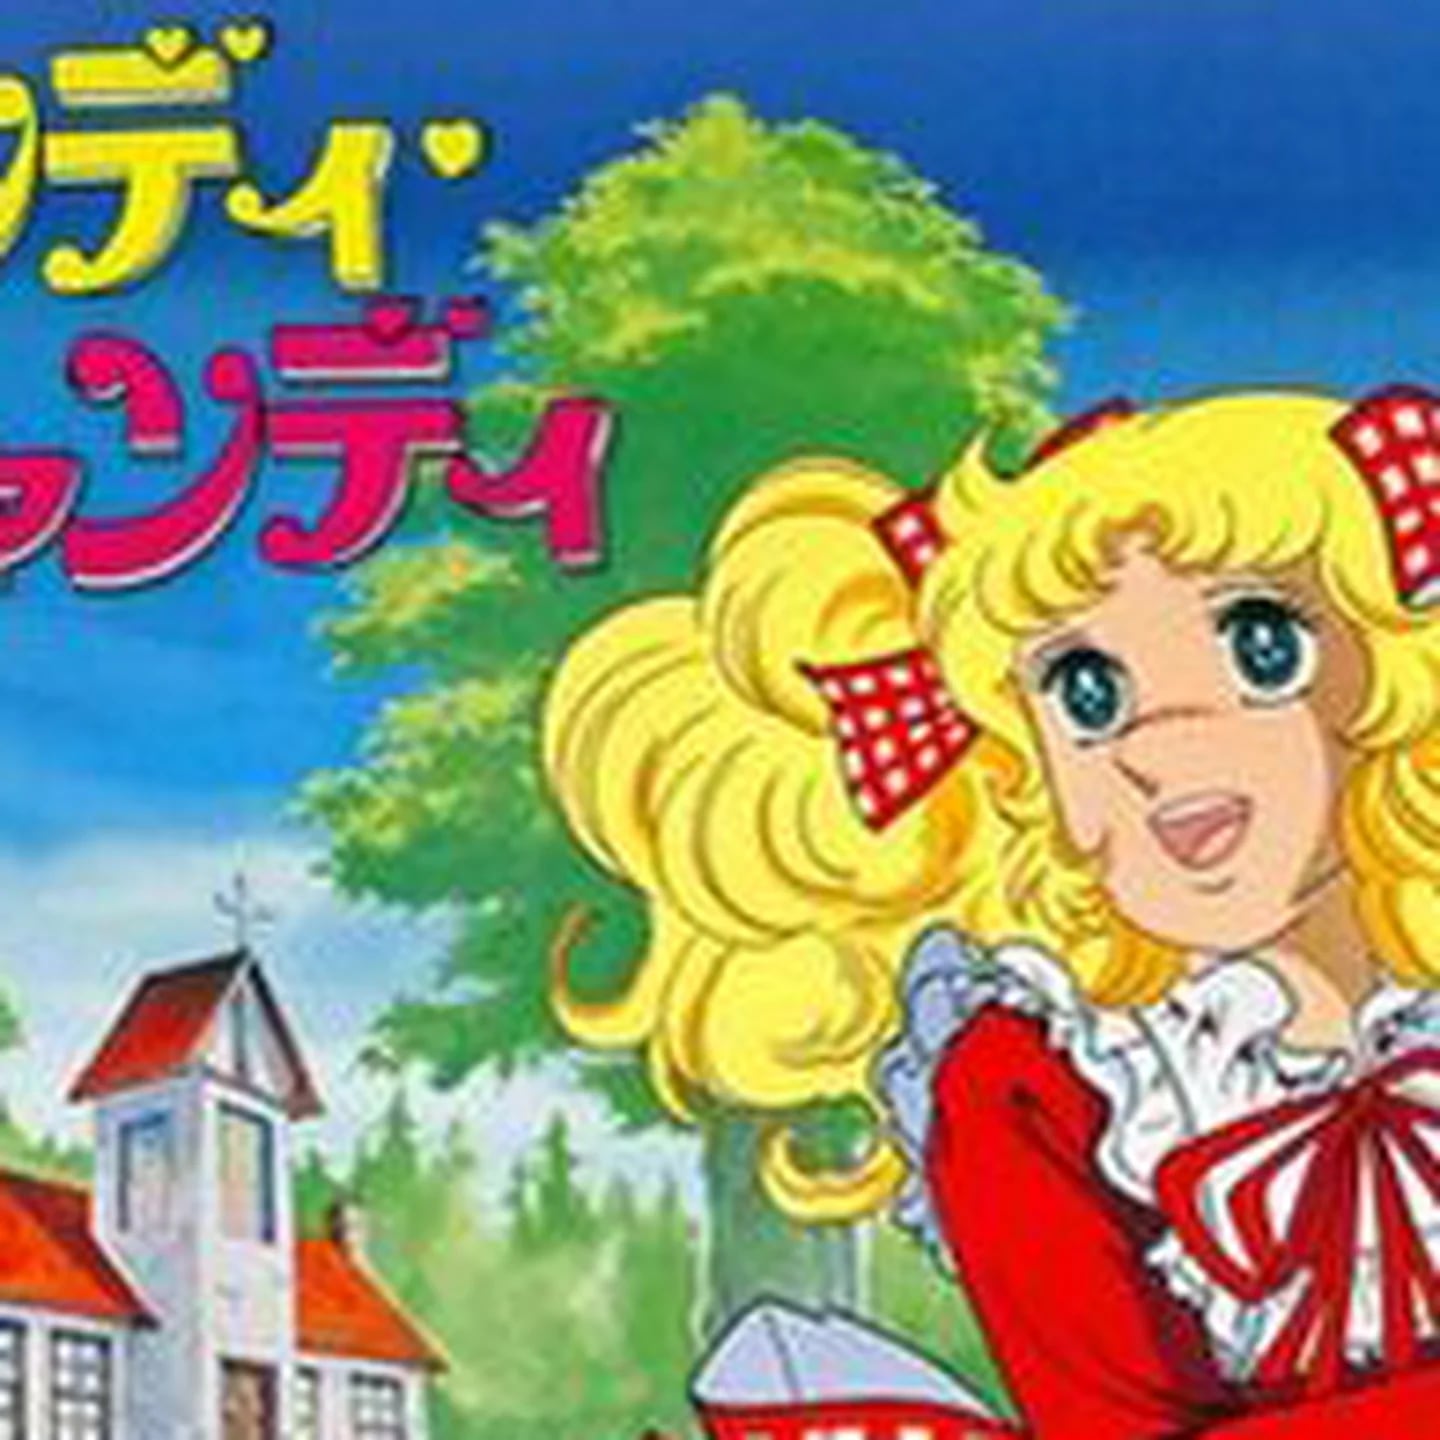 Candy Candy: por qué la famosa caricatura japonesa estaría prohibida en la  televisión - Infobae